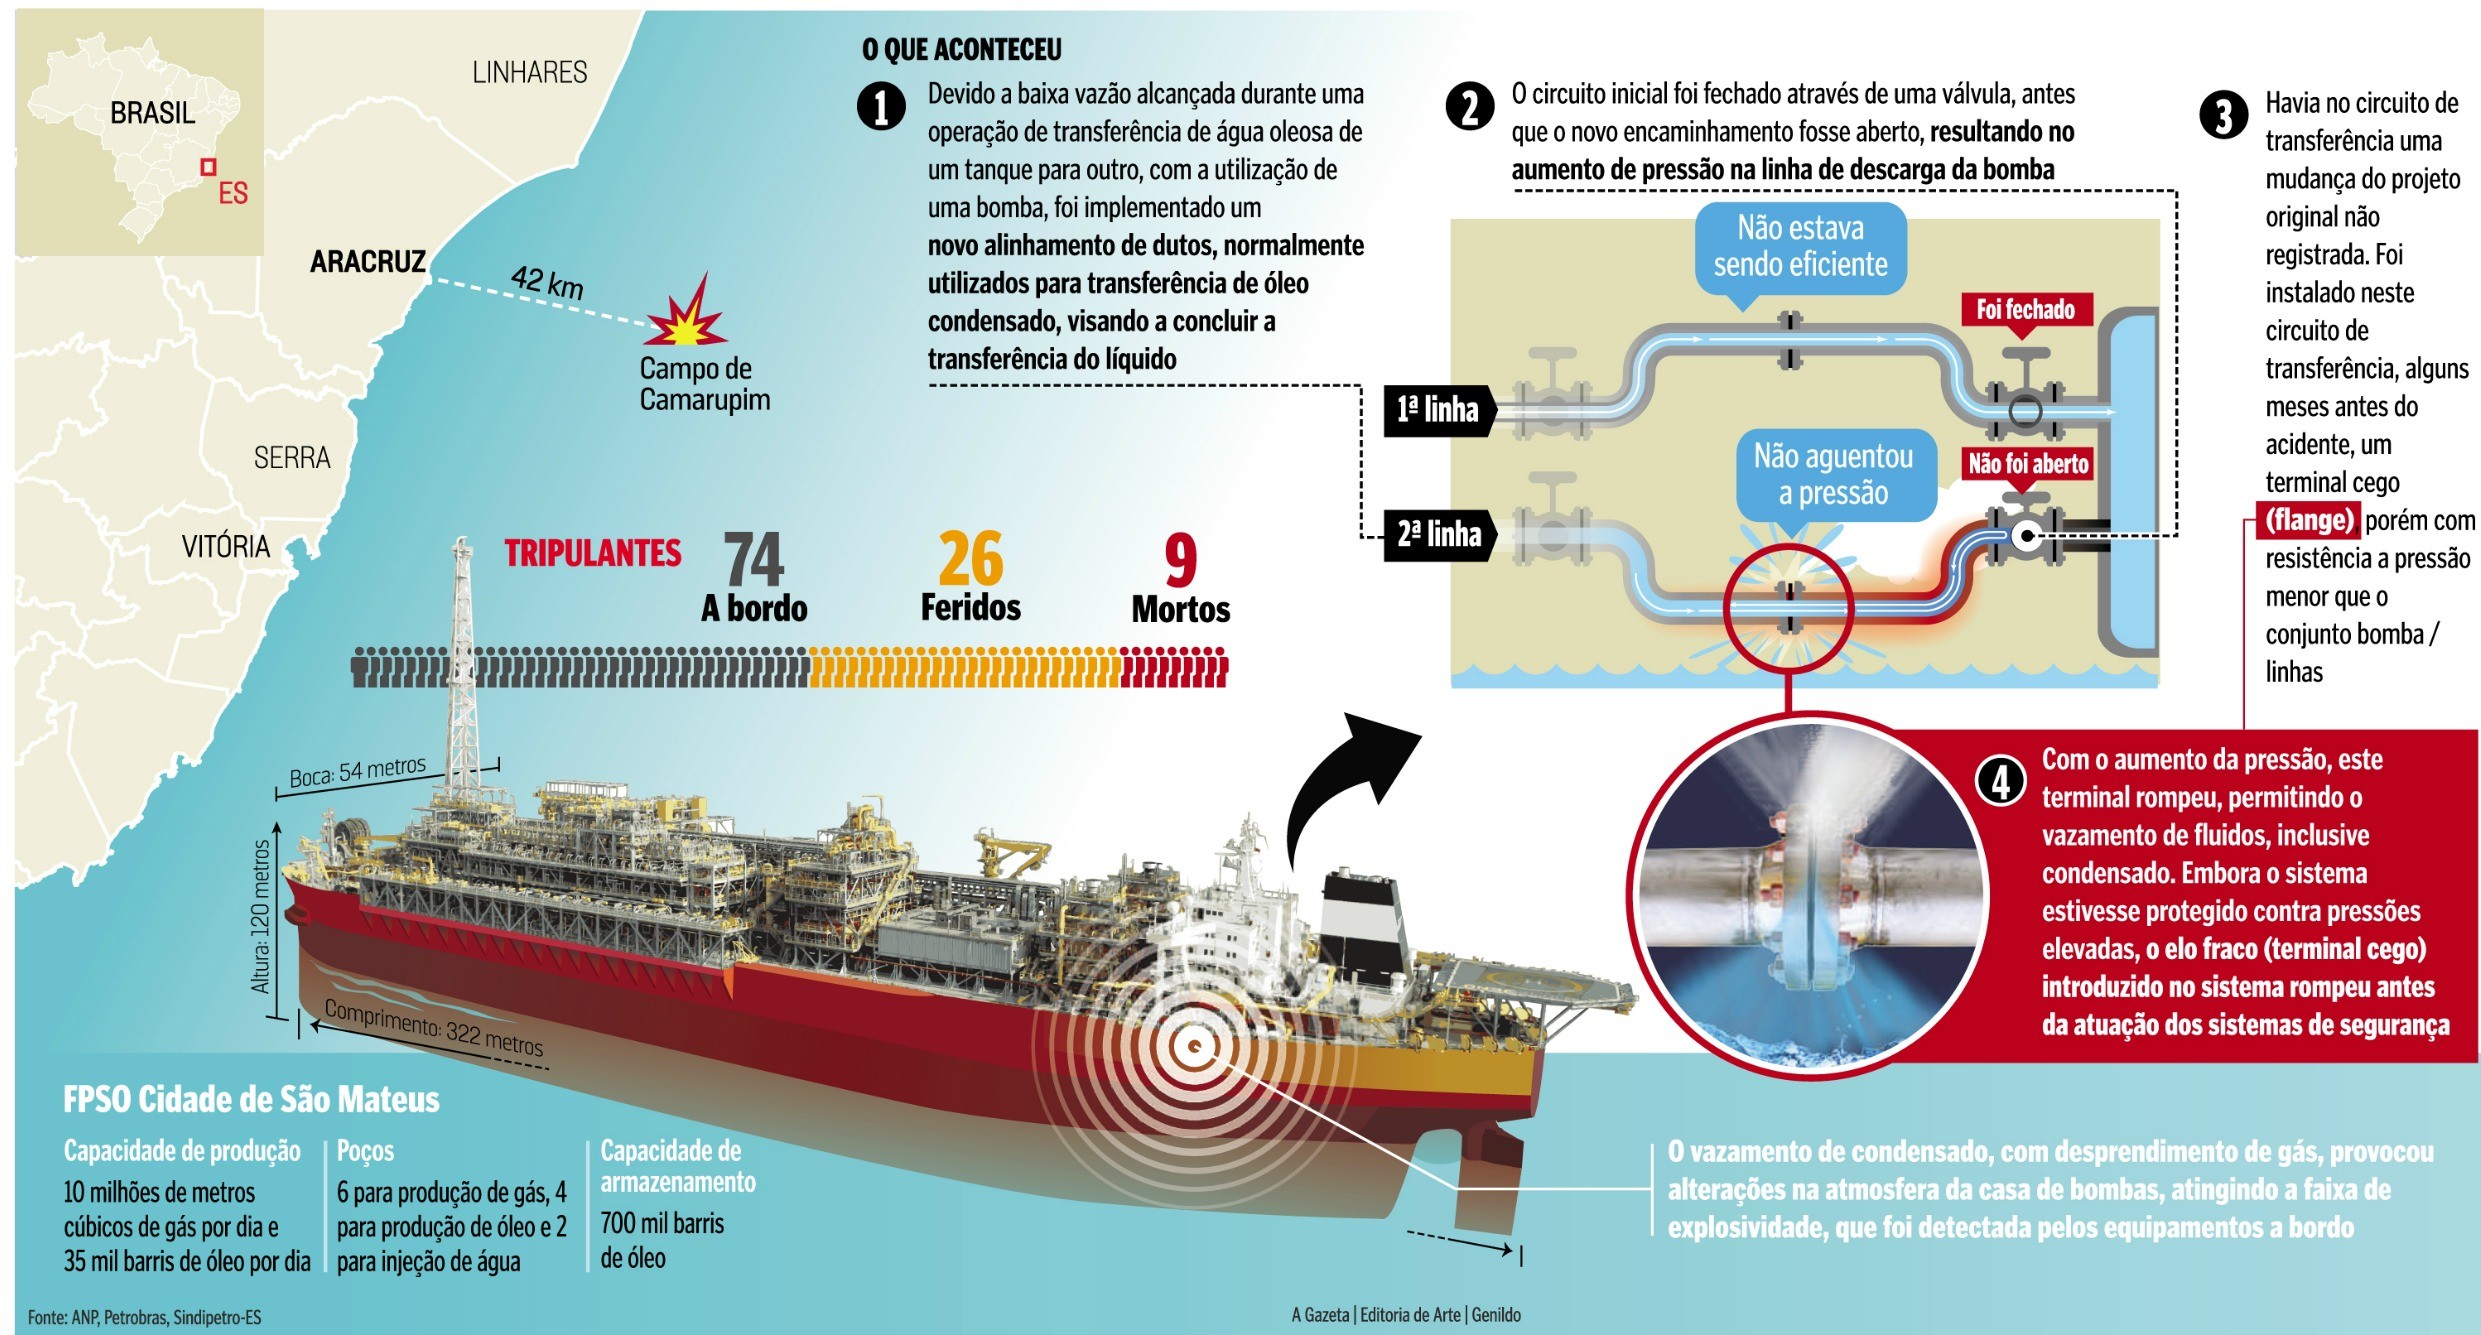 Relatório interno da Petrobras revela causas de explosão em navio no Espírito santo (Foto: A Gazeta)